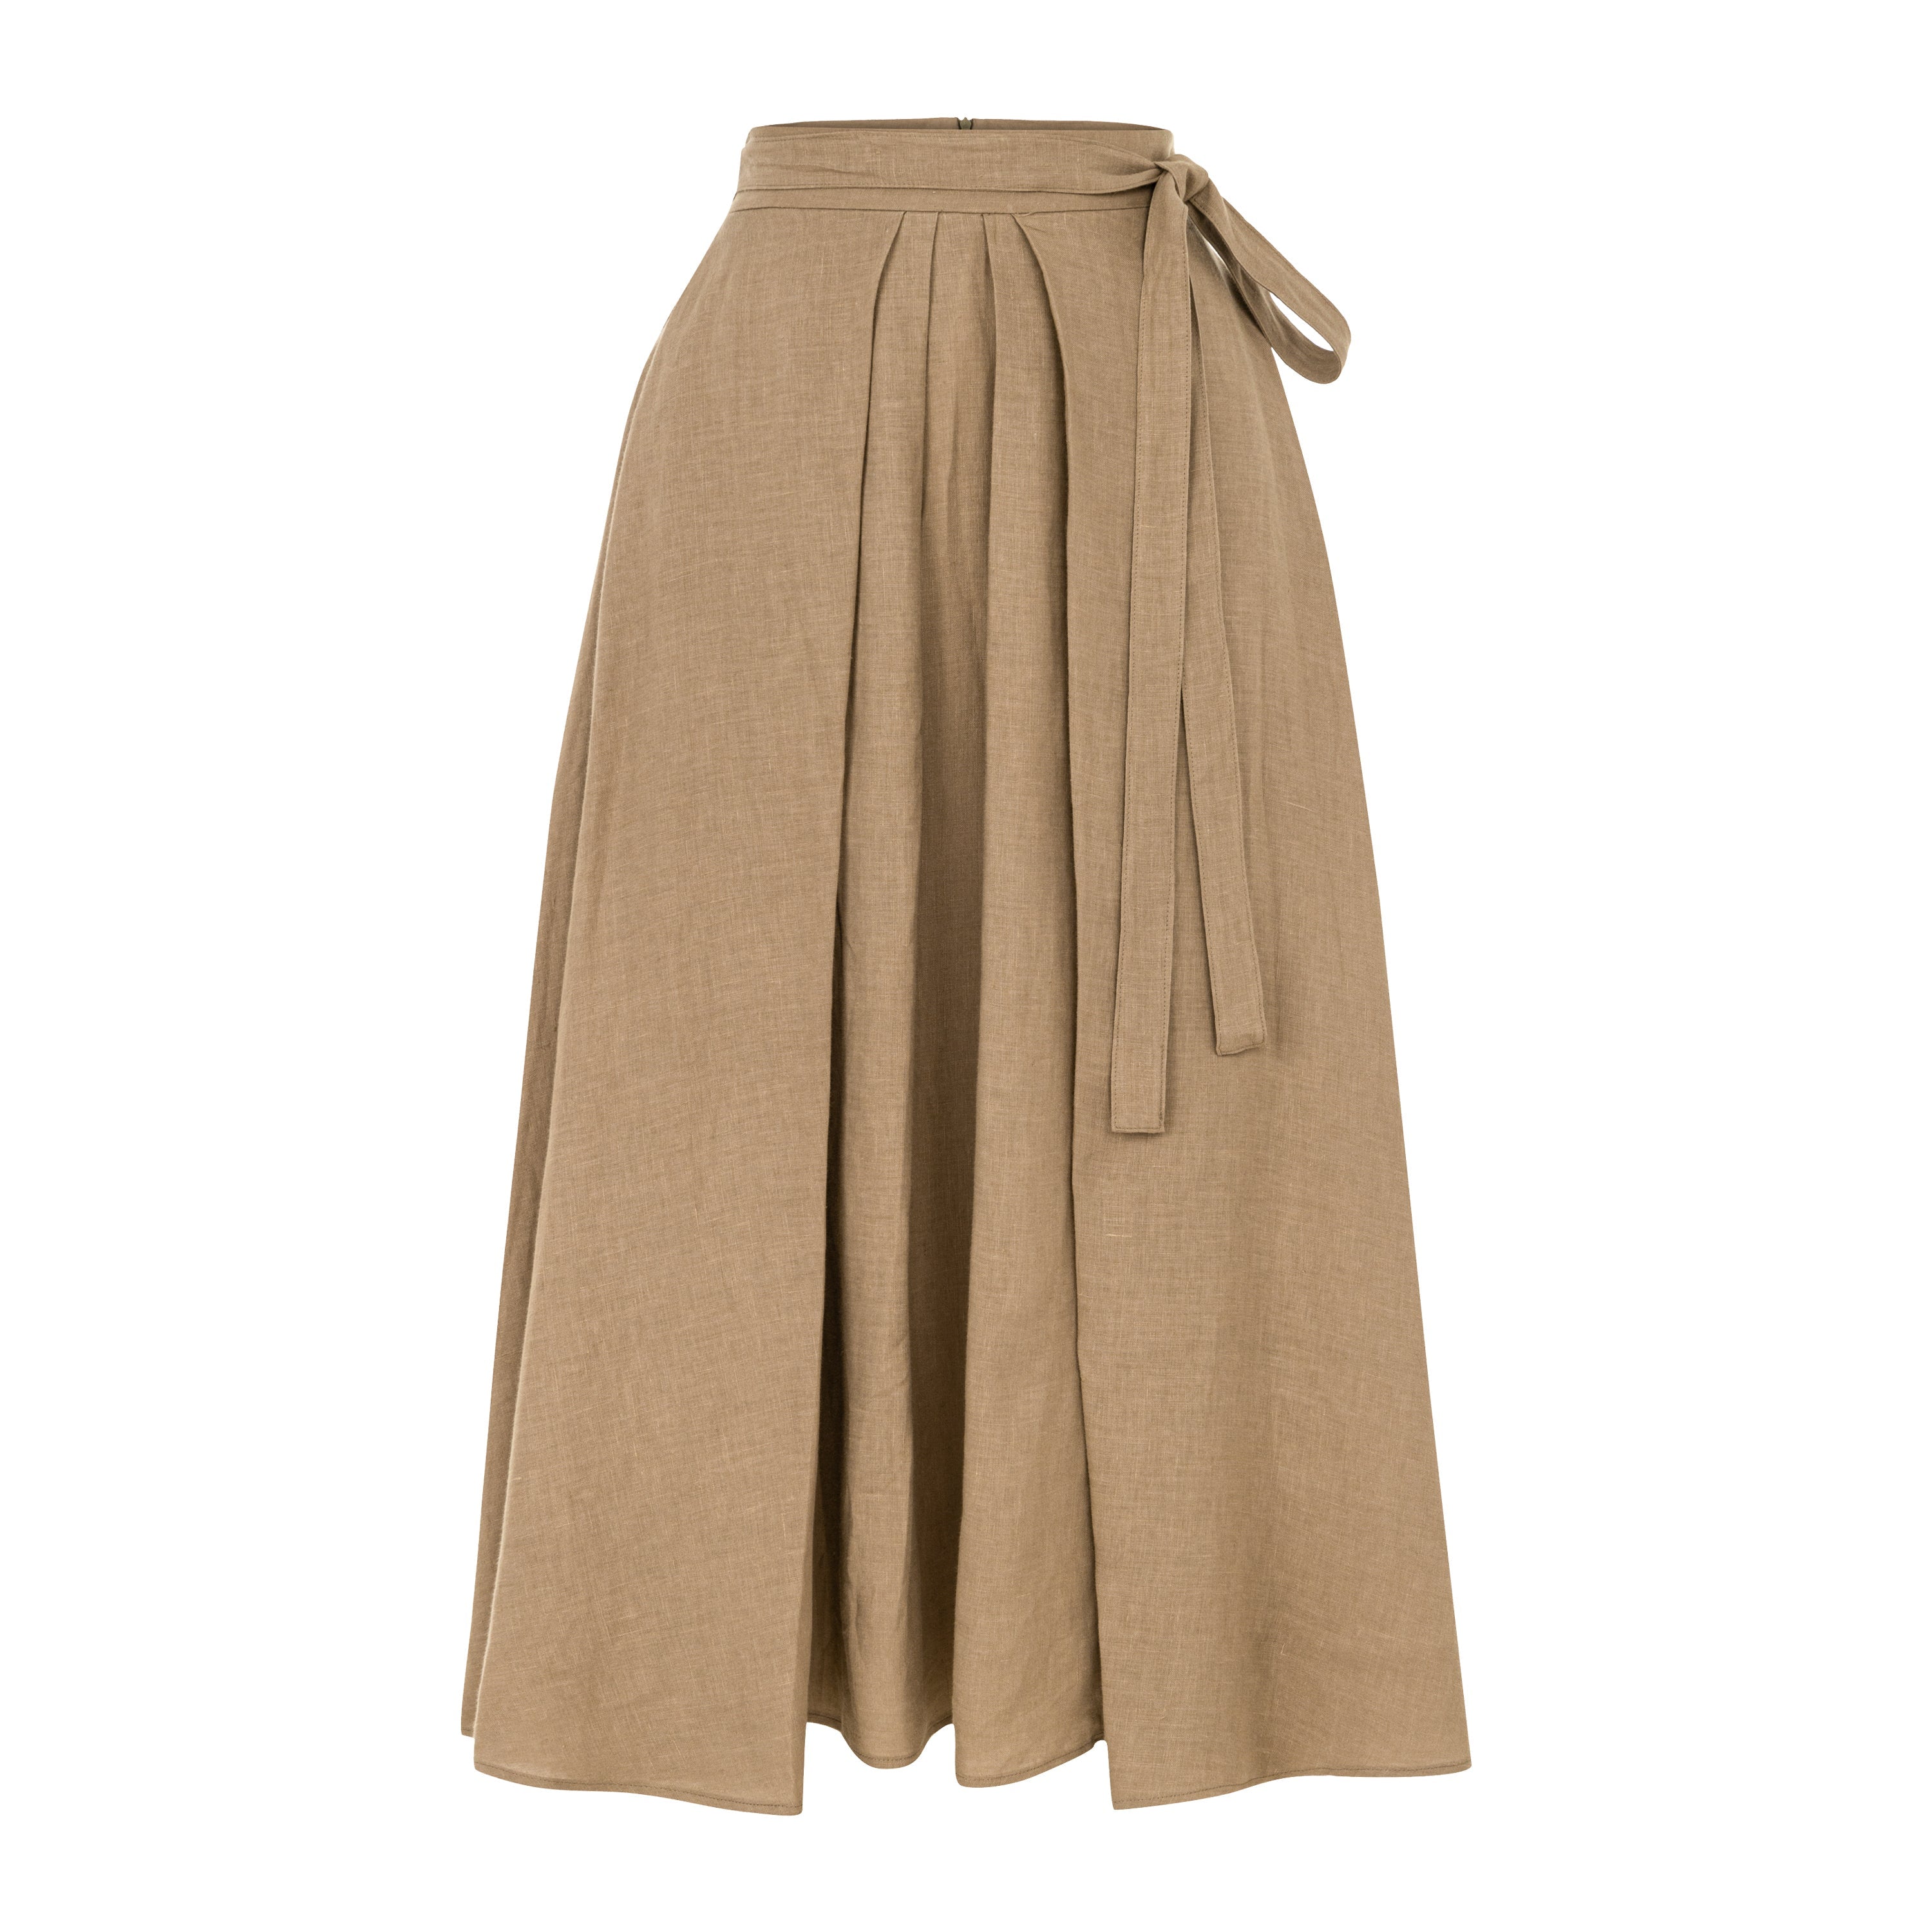 Grand Gesture Linen Skirt